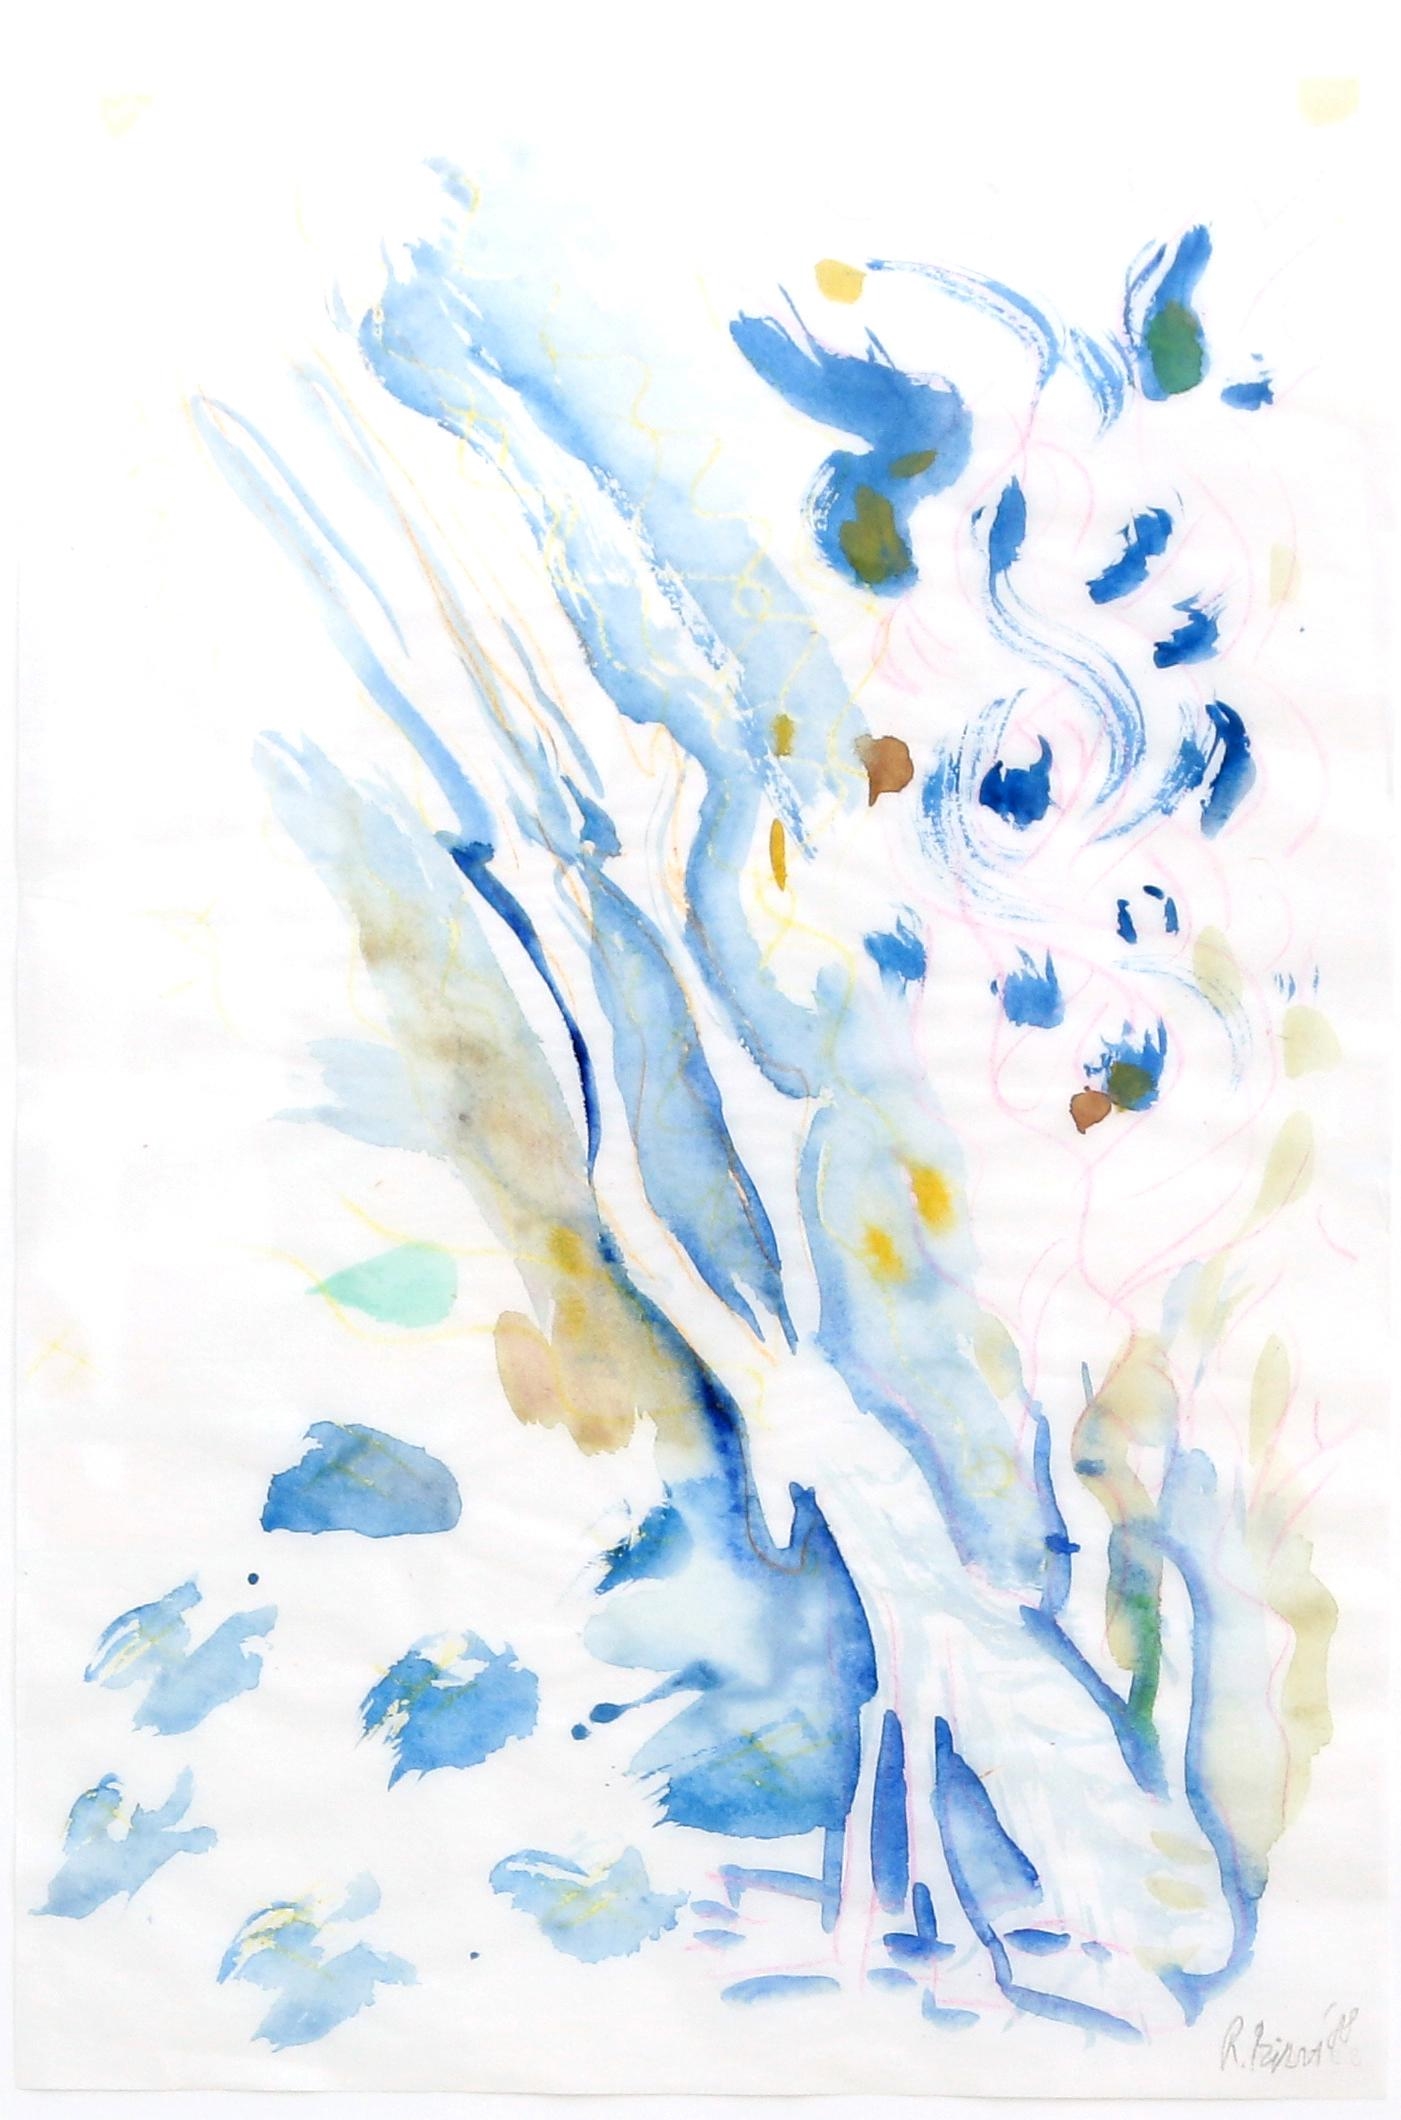 Abstracte compositie in blauw en geel by Rob Birza, 1988